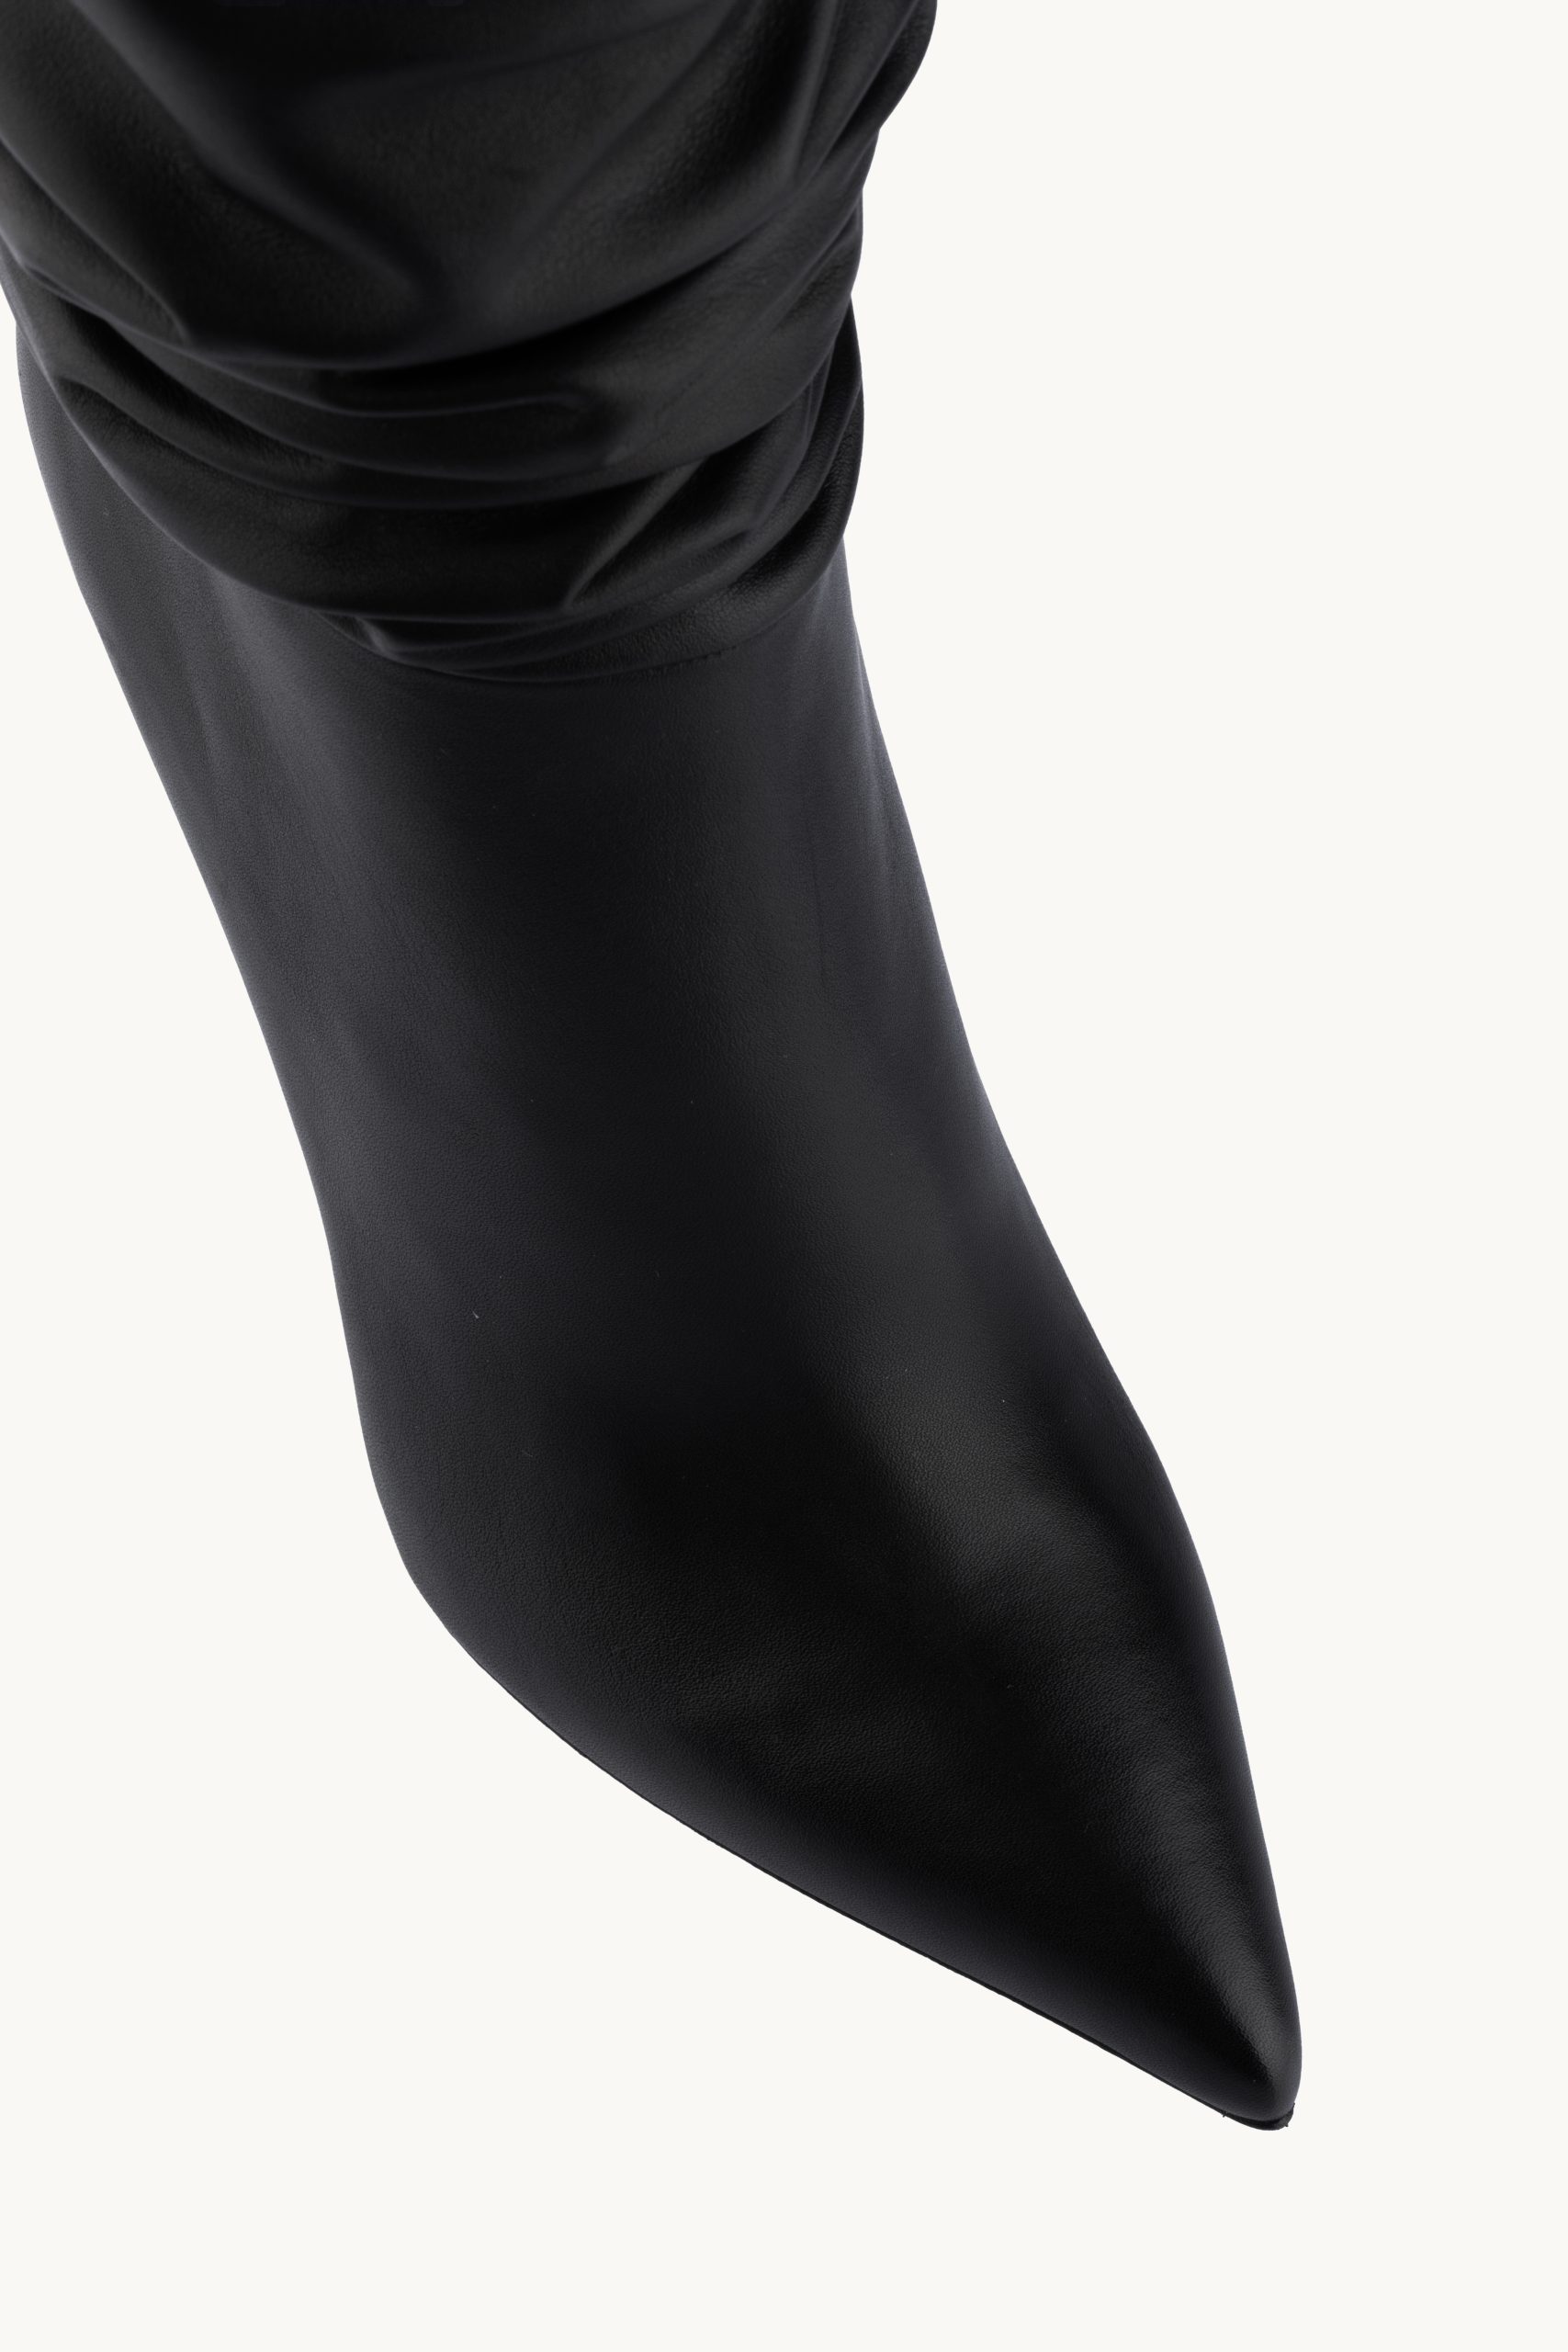 Kratke čižme - Midnight Excitement su špicaste crne čizme od prave kože srednje visine sa naborima i tankom štiklom.